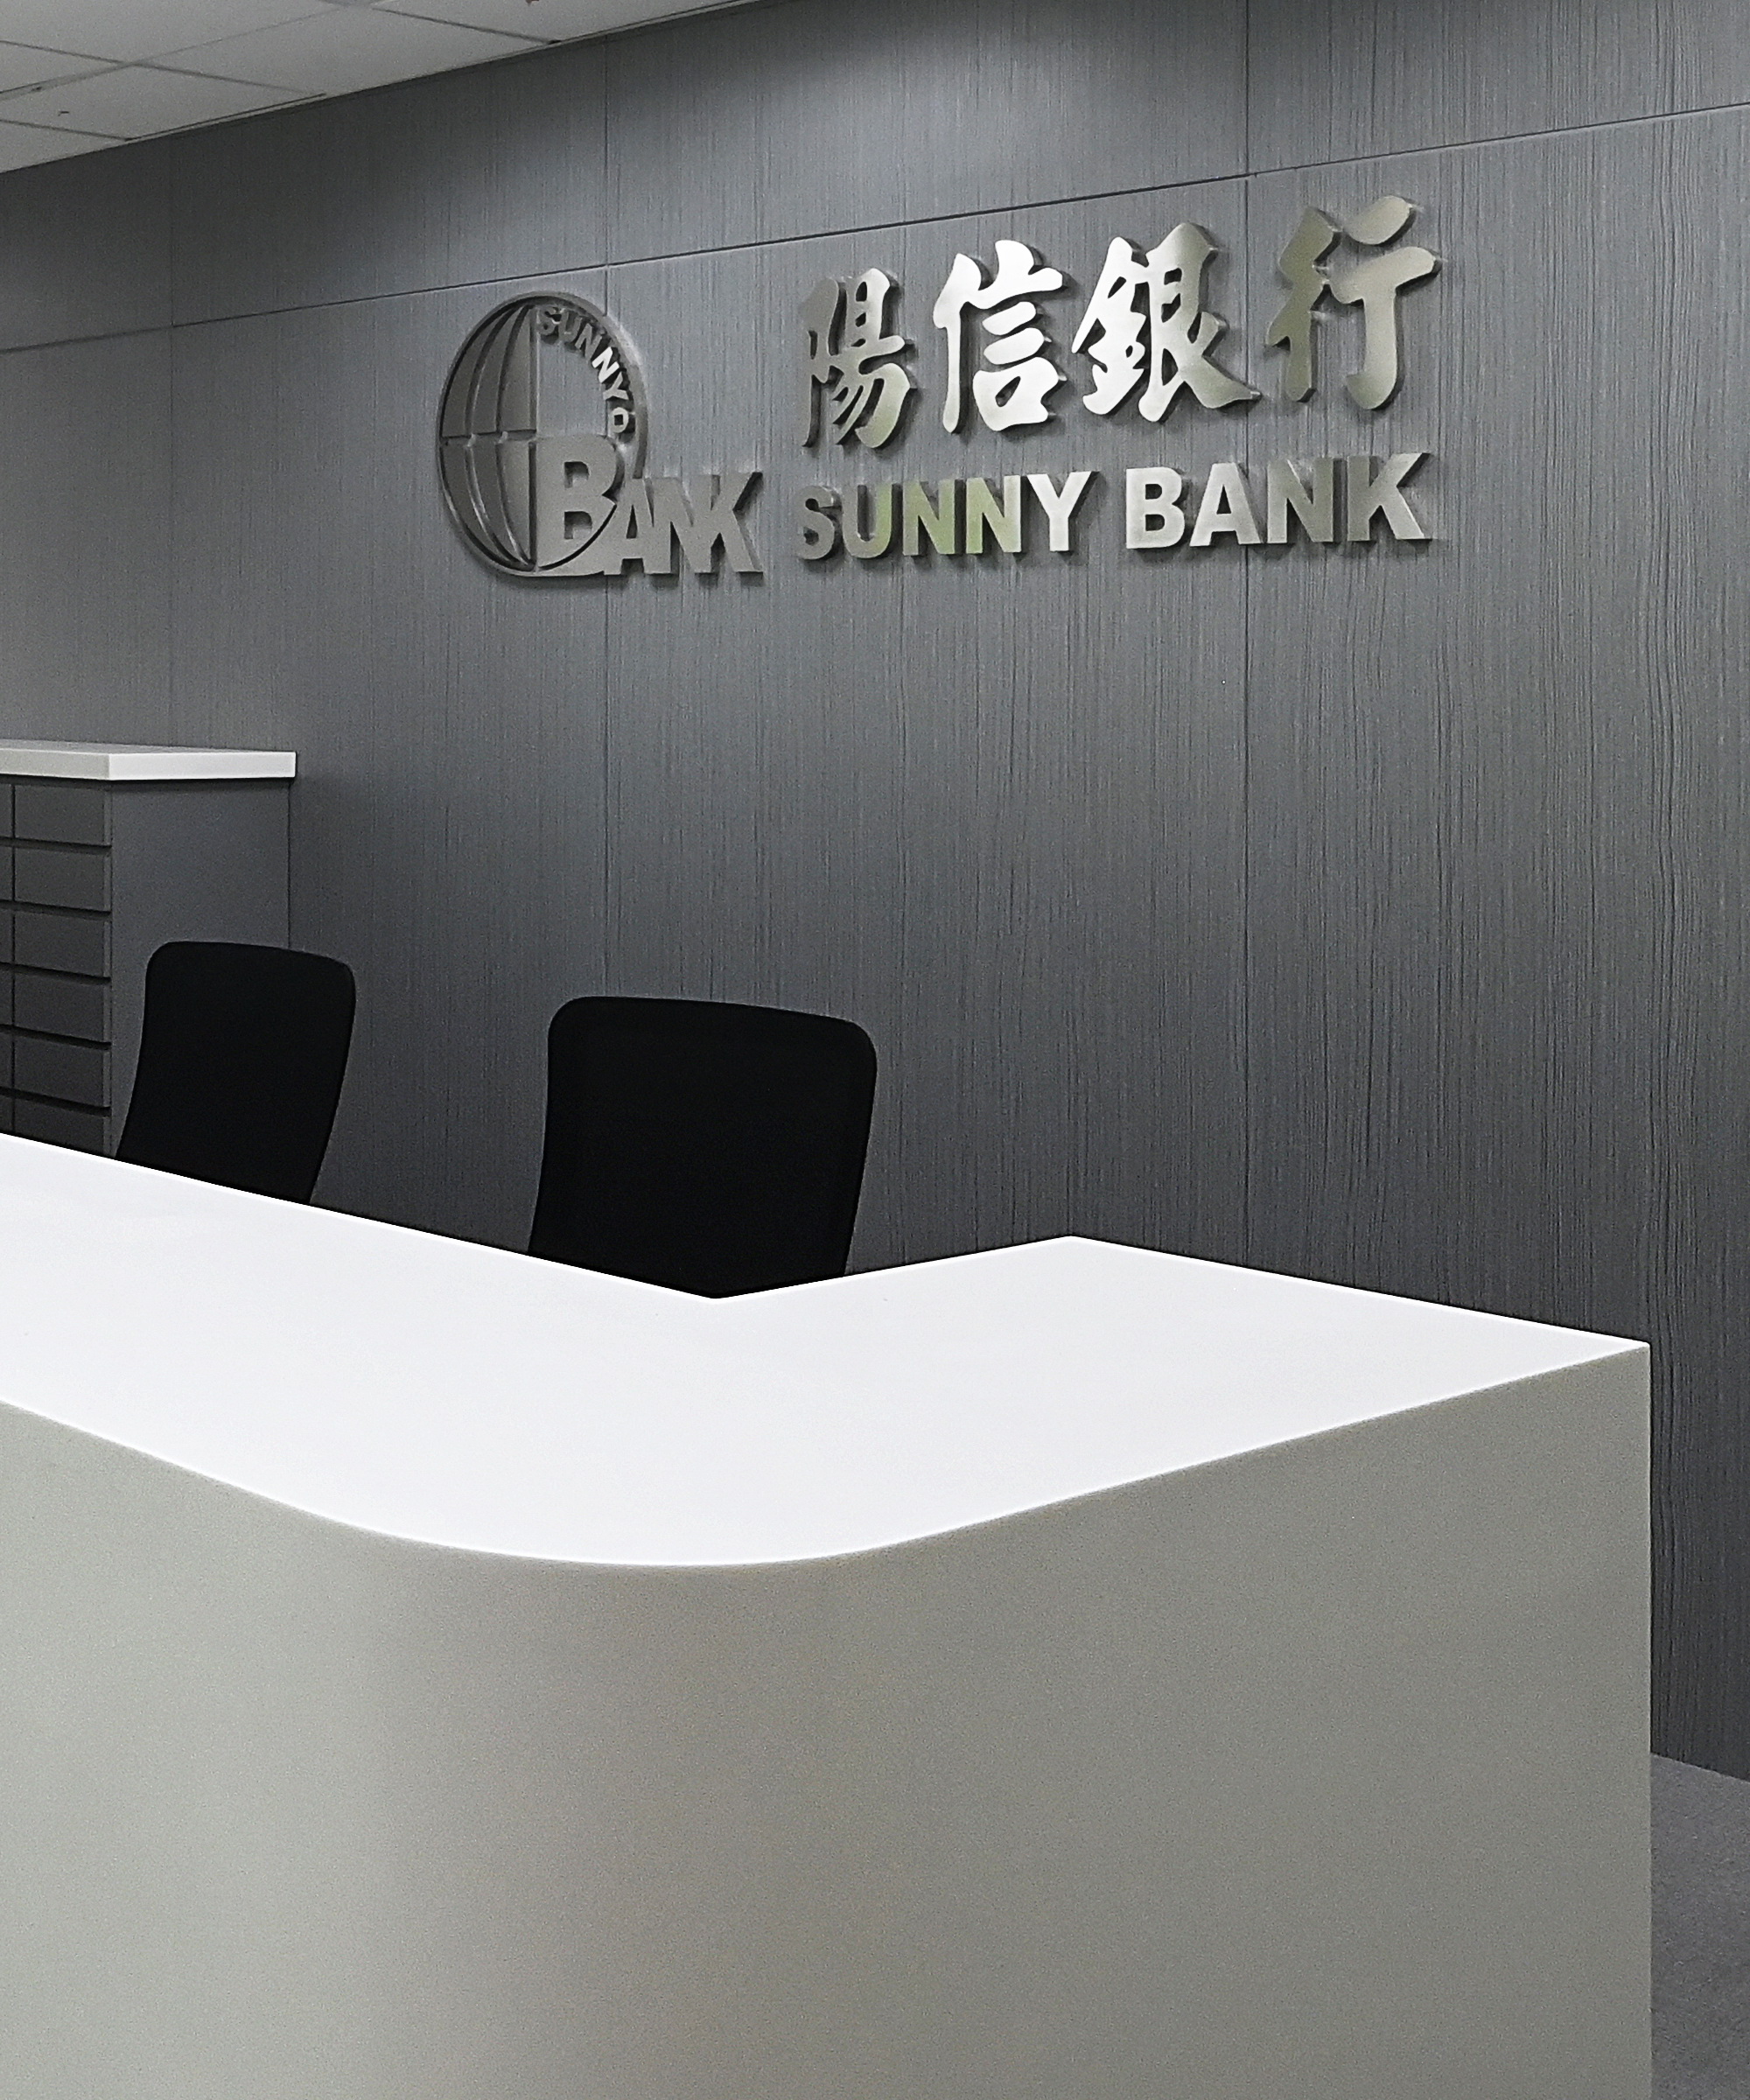 阳信银行总部 SUNNY BANK HQ